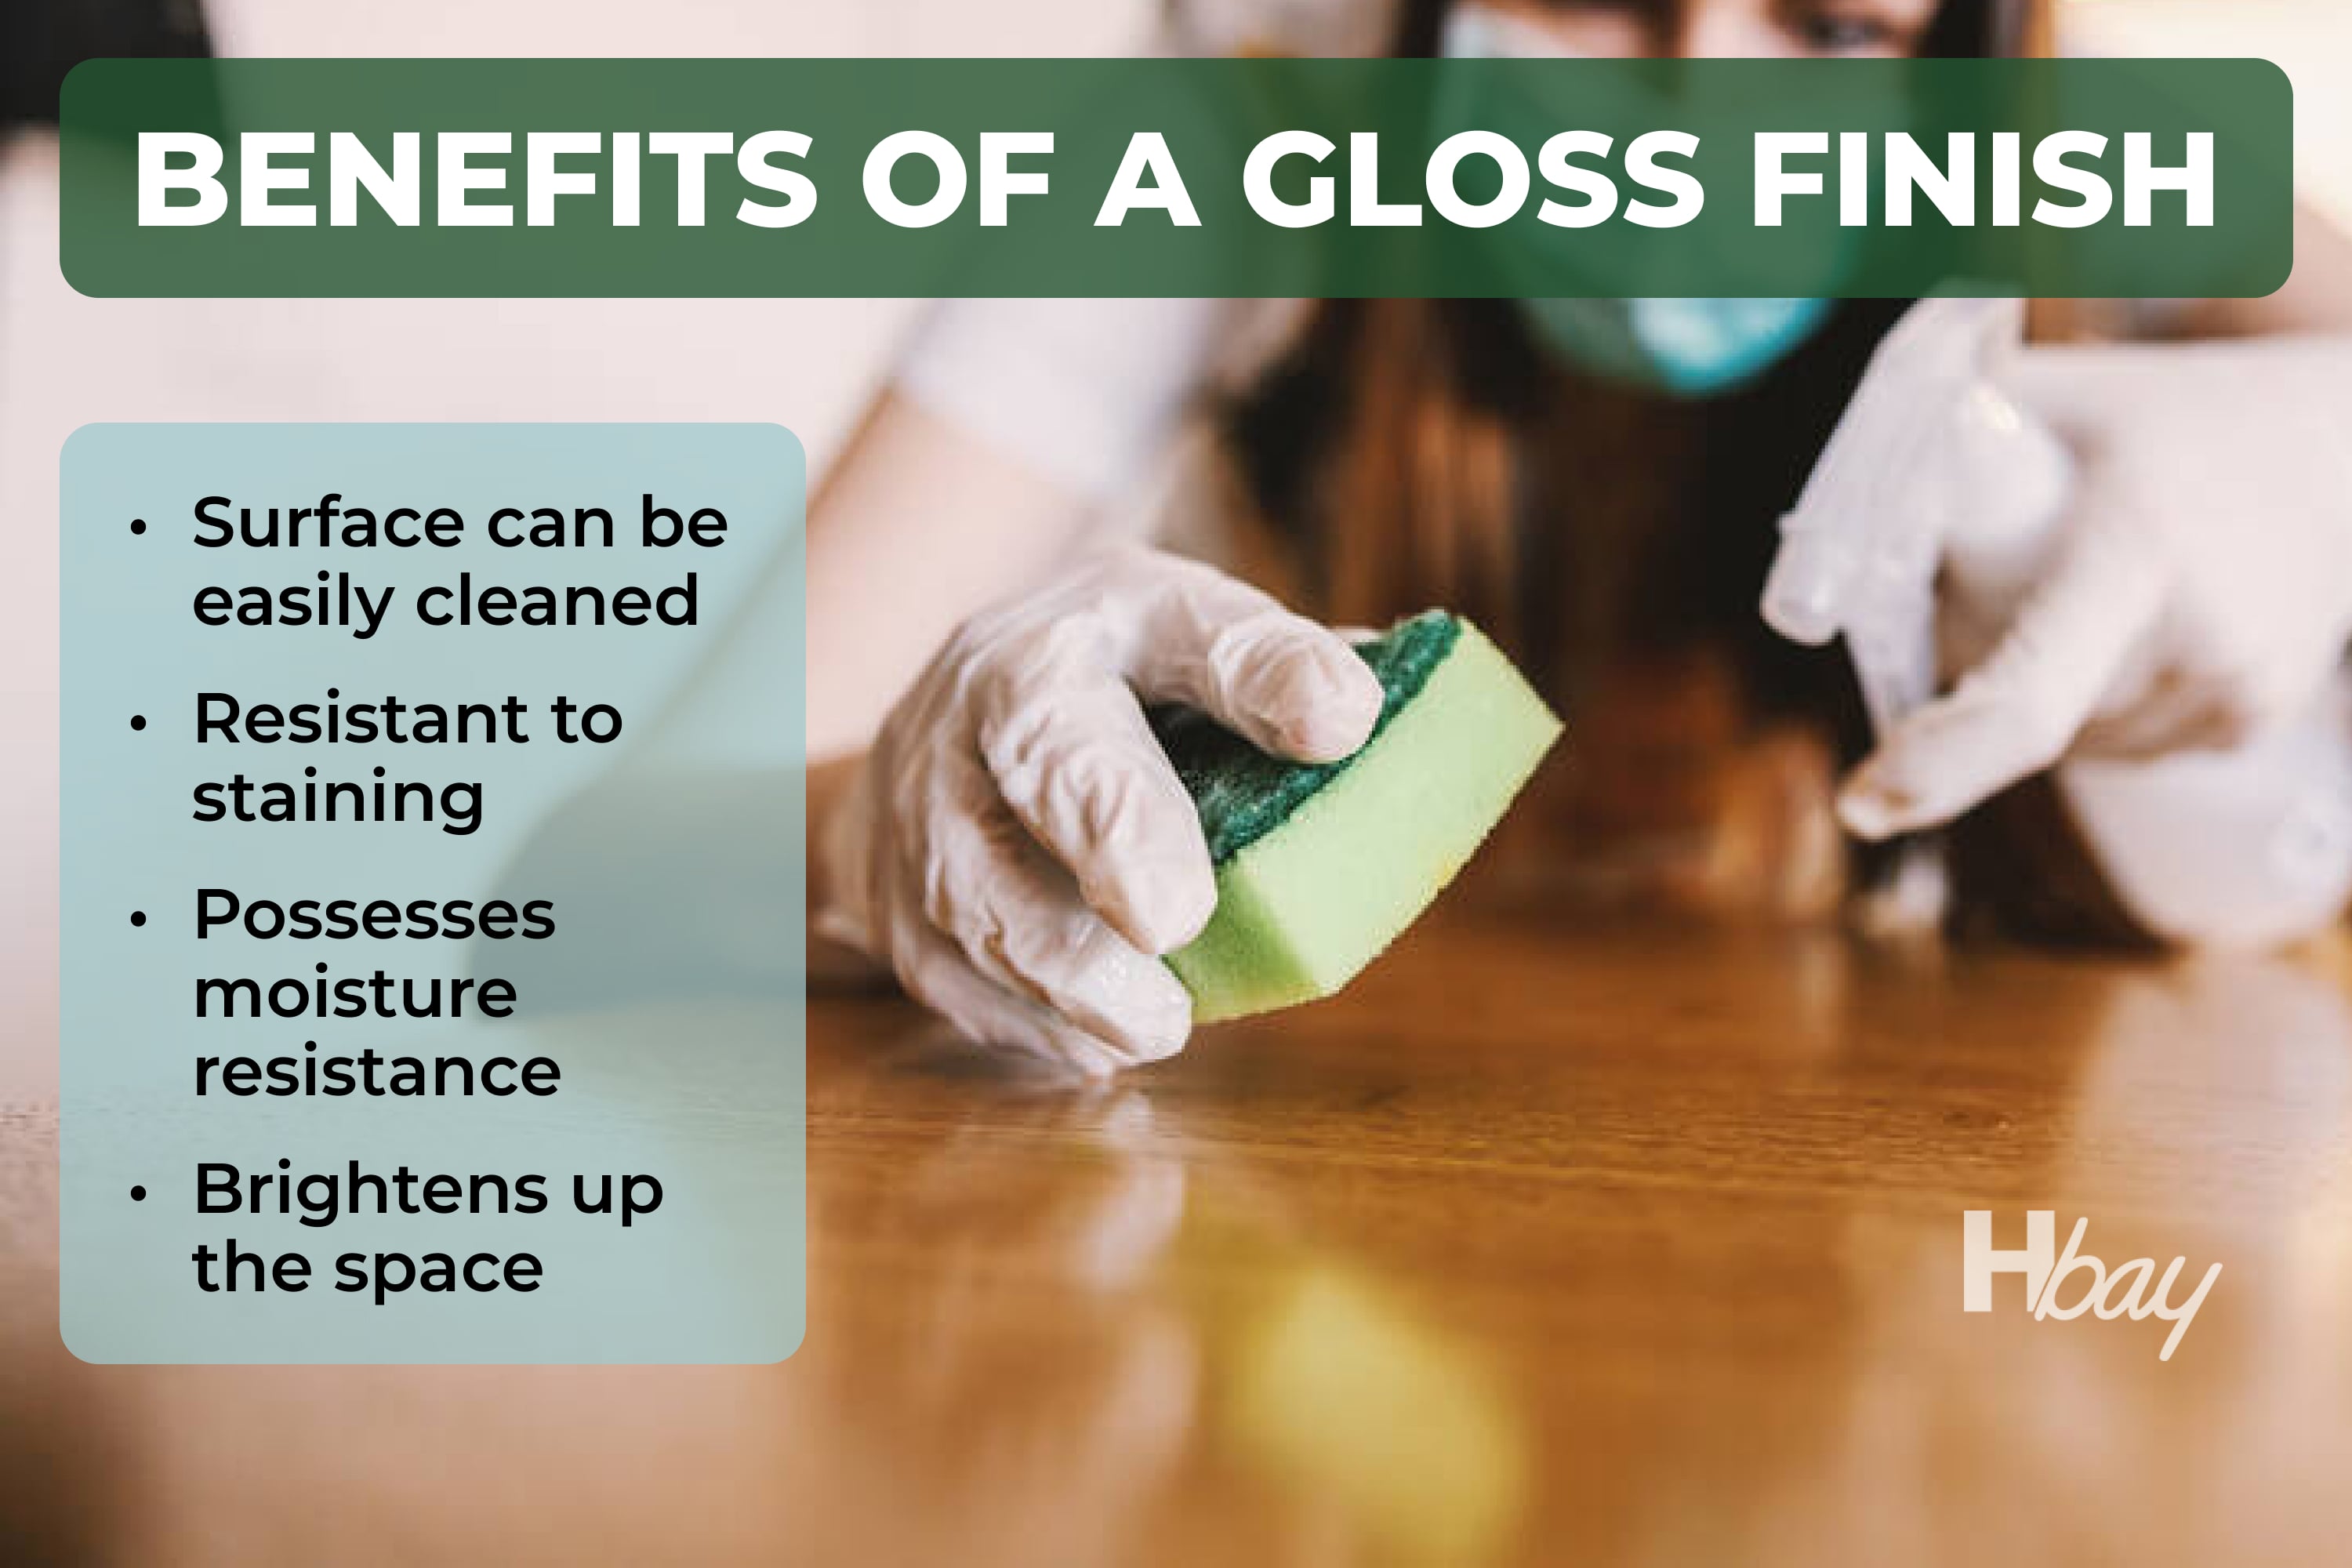 Benefits of a gloss finish